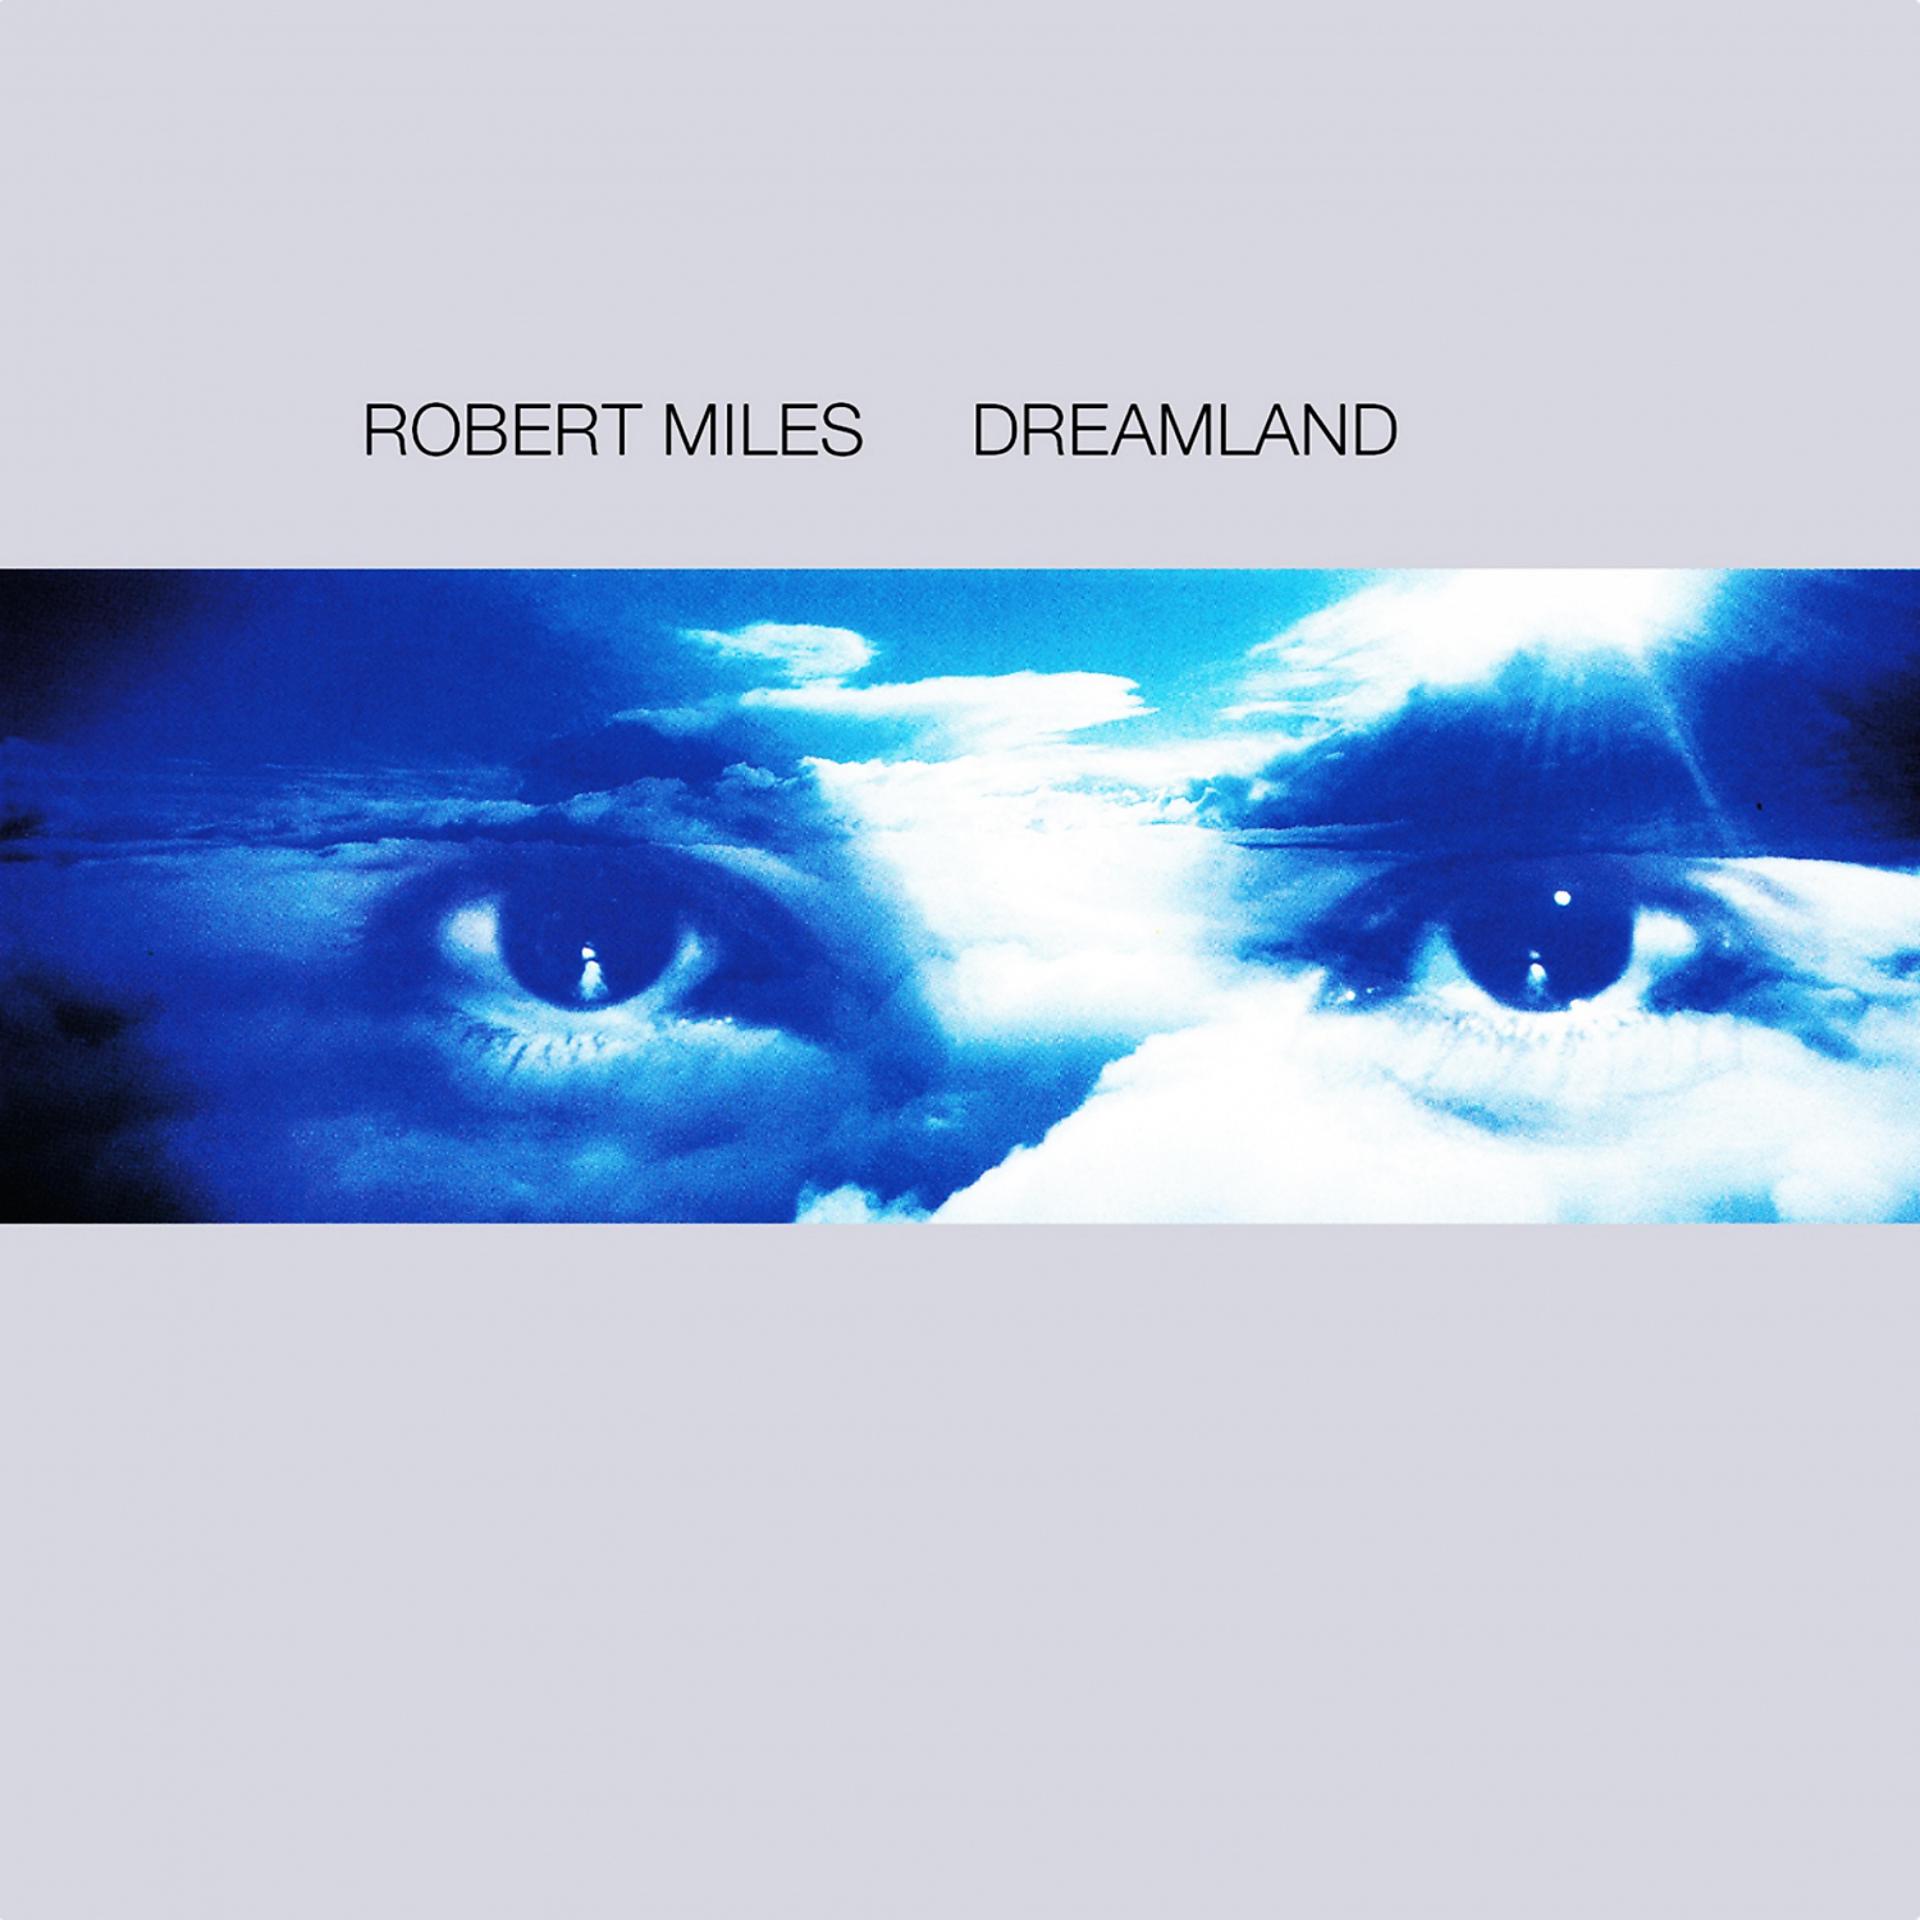 Robert miles dreamland. Robert Miles children 1996. Robert Miles Dreamland 1996. Robert Miles - Dreamland (1996) компакт диск.